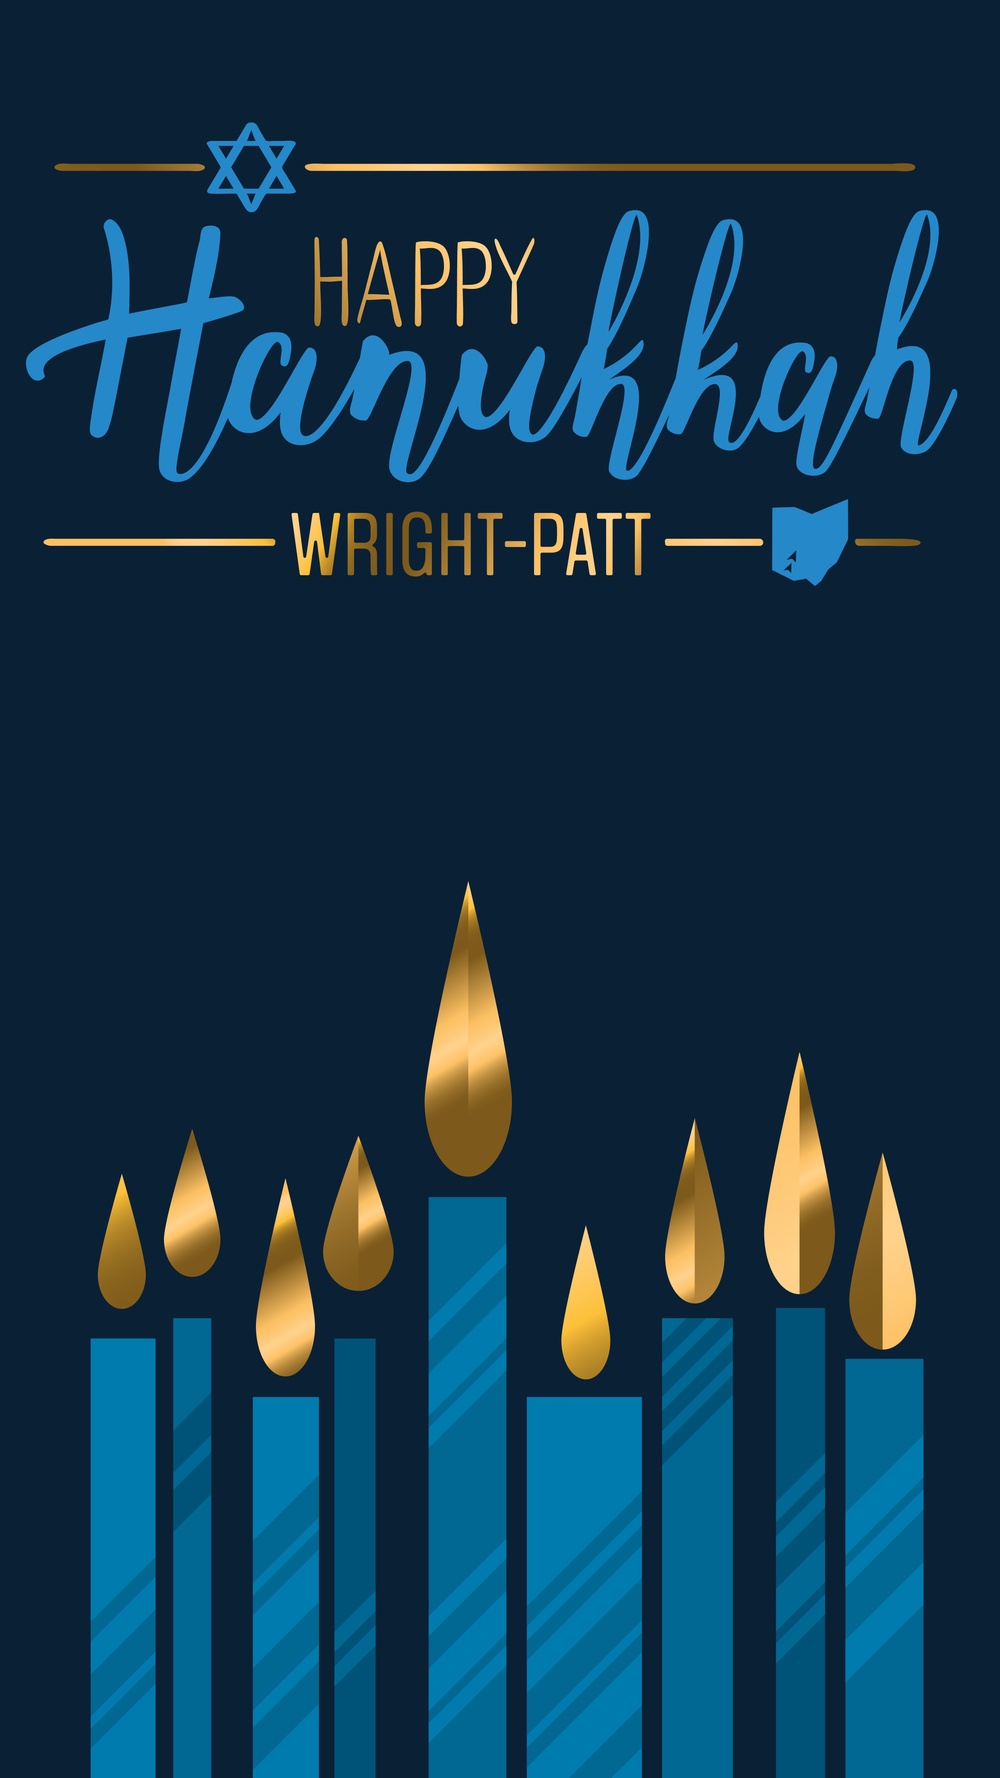 Happy Hanukkah Wright-Patt - Instagram